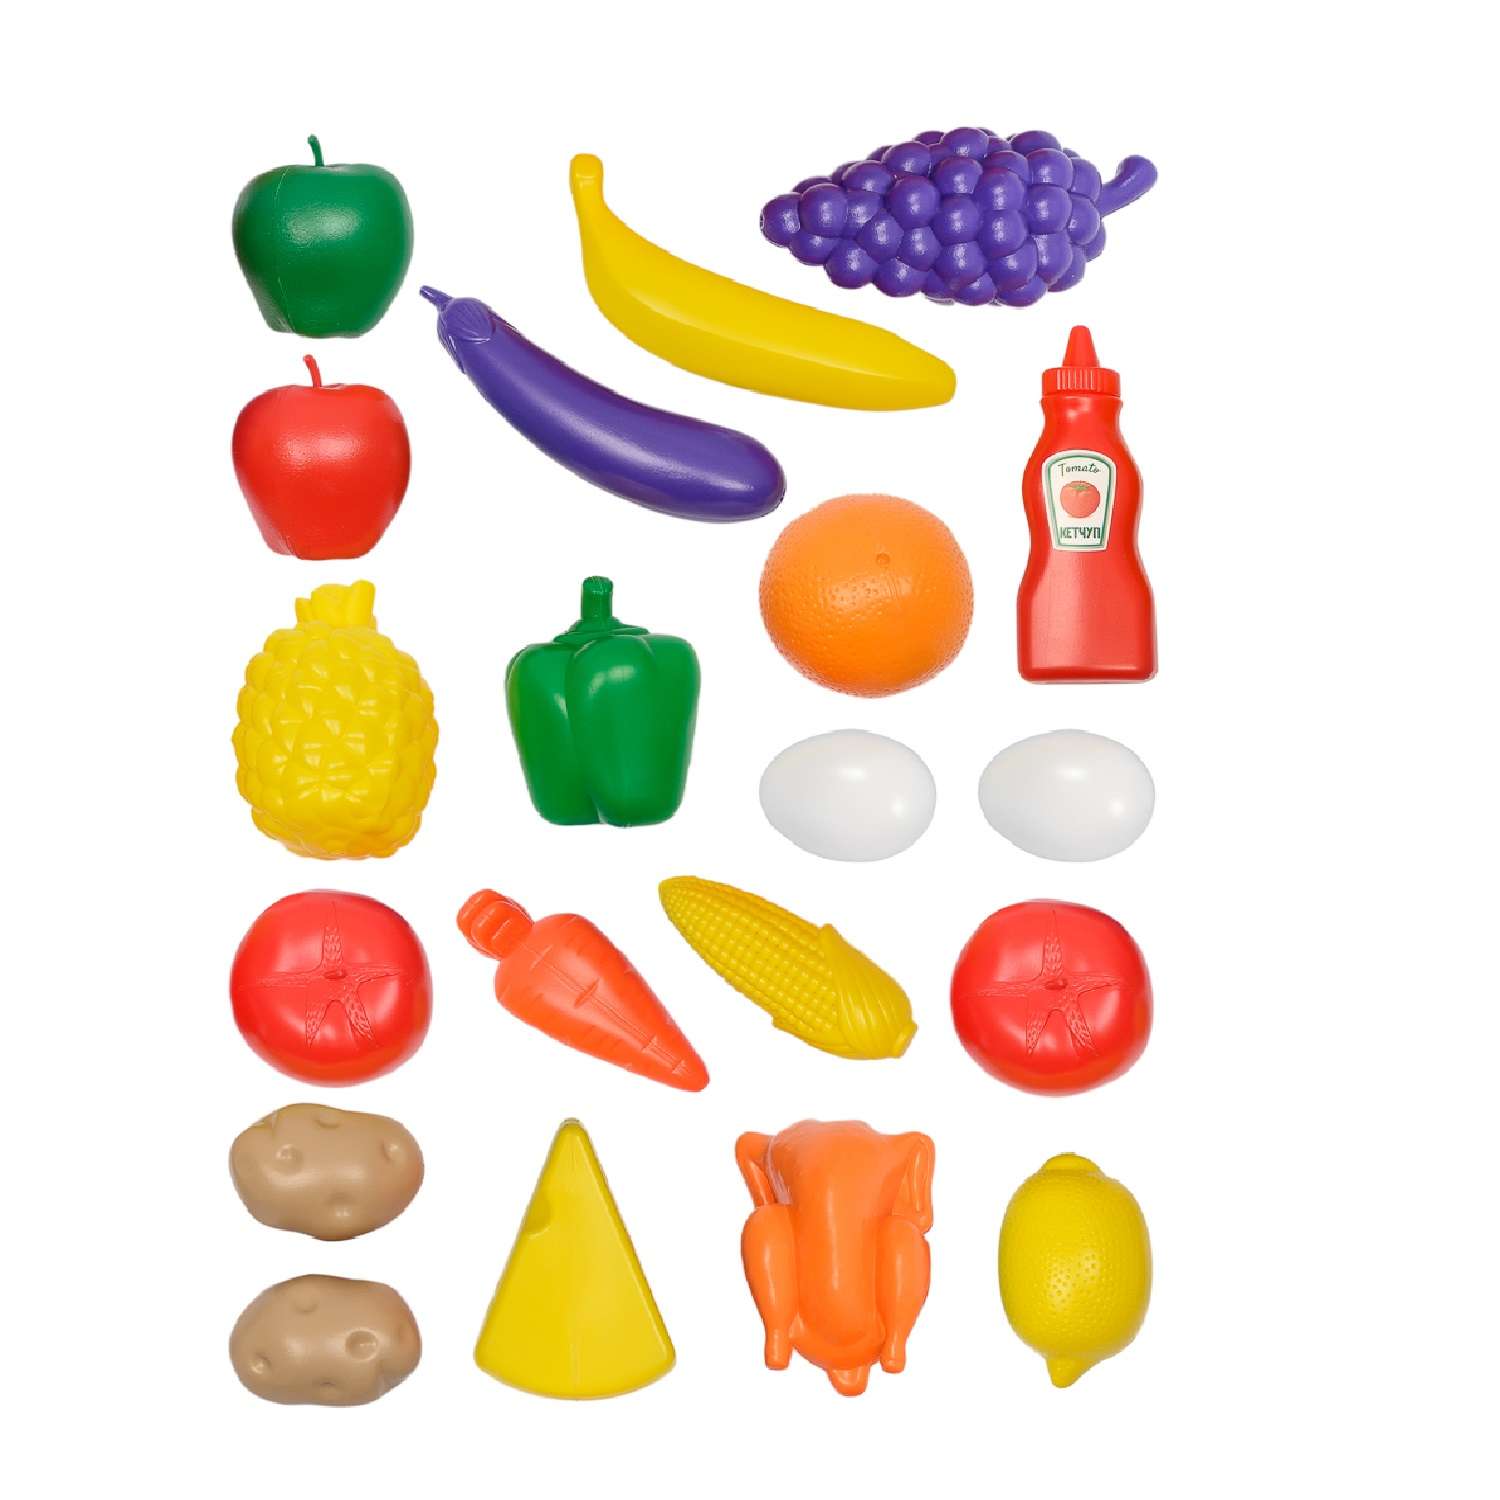 Игровой набор для кухни Green Plast игрушечные овощи фрукты продукты - фото 1